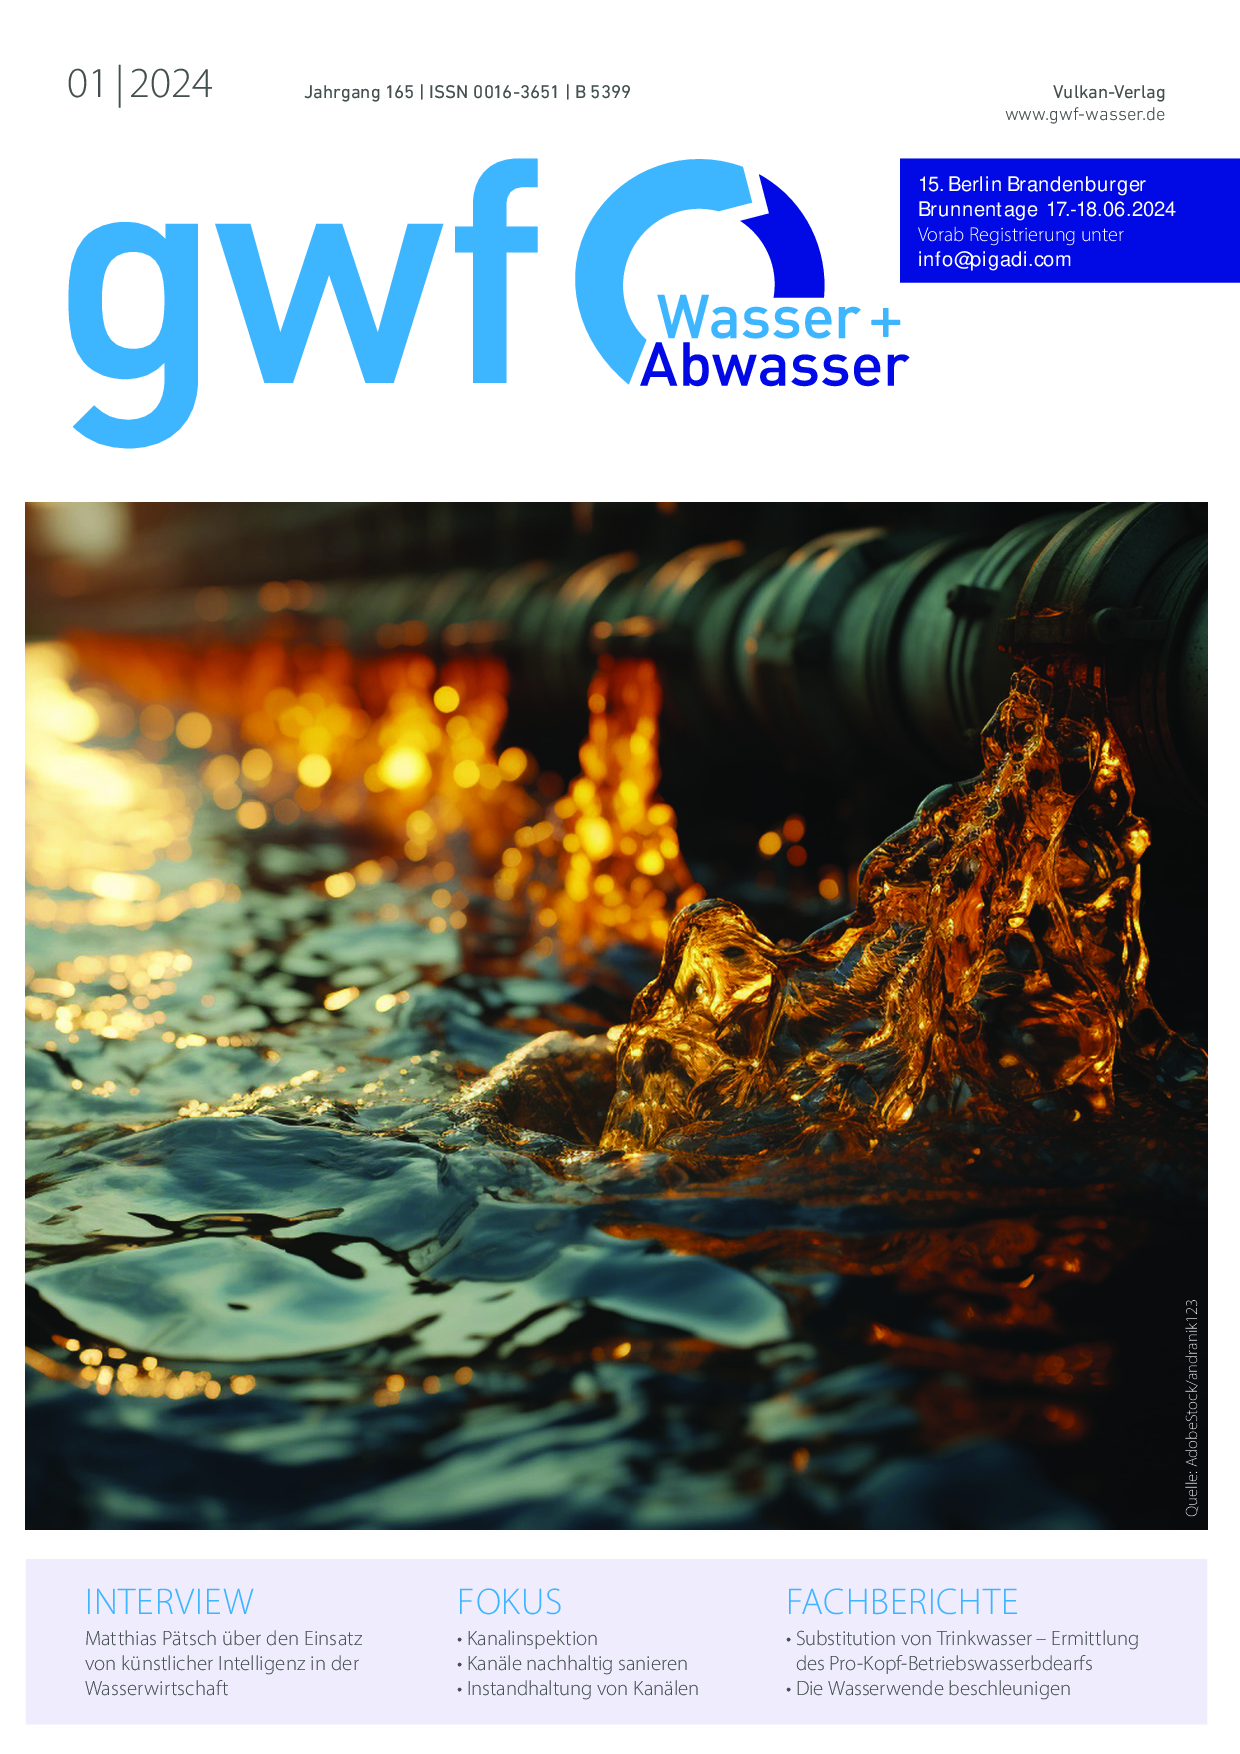 gwf – Wasser|Abwasser – 01 2024